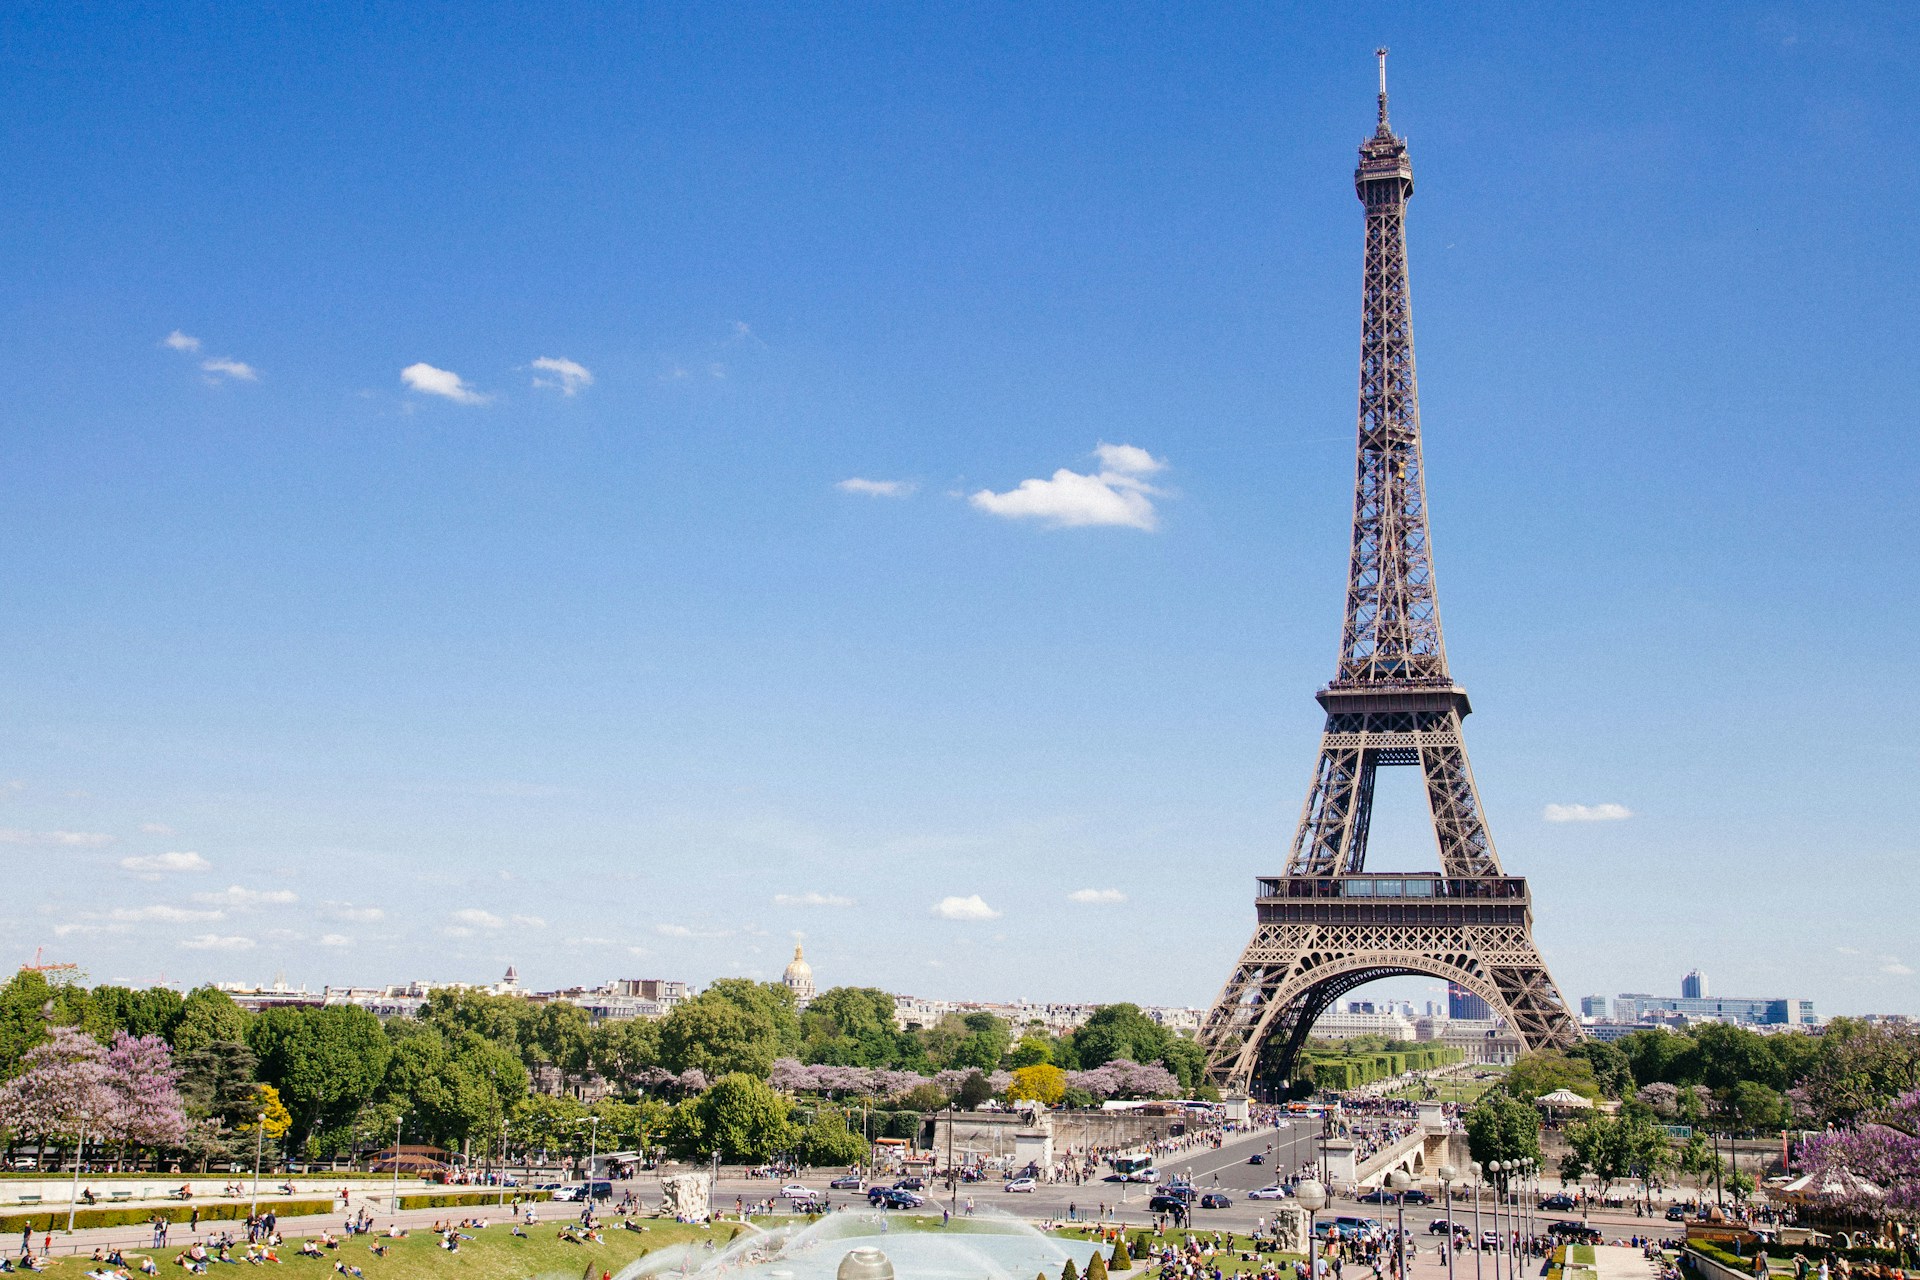 Plan zwiedzania Paryża - co zobaczyć i gdzie się zatrzymać